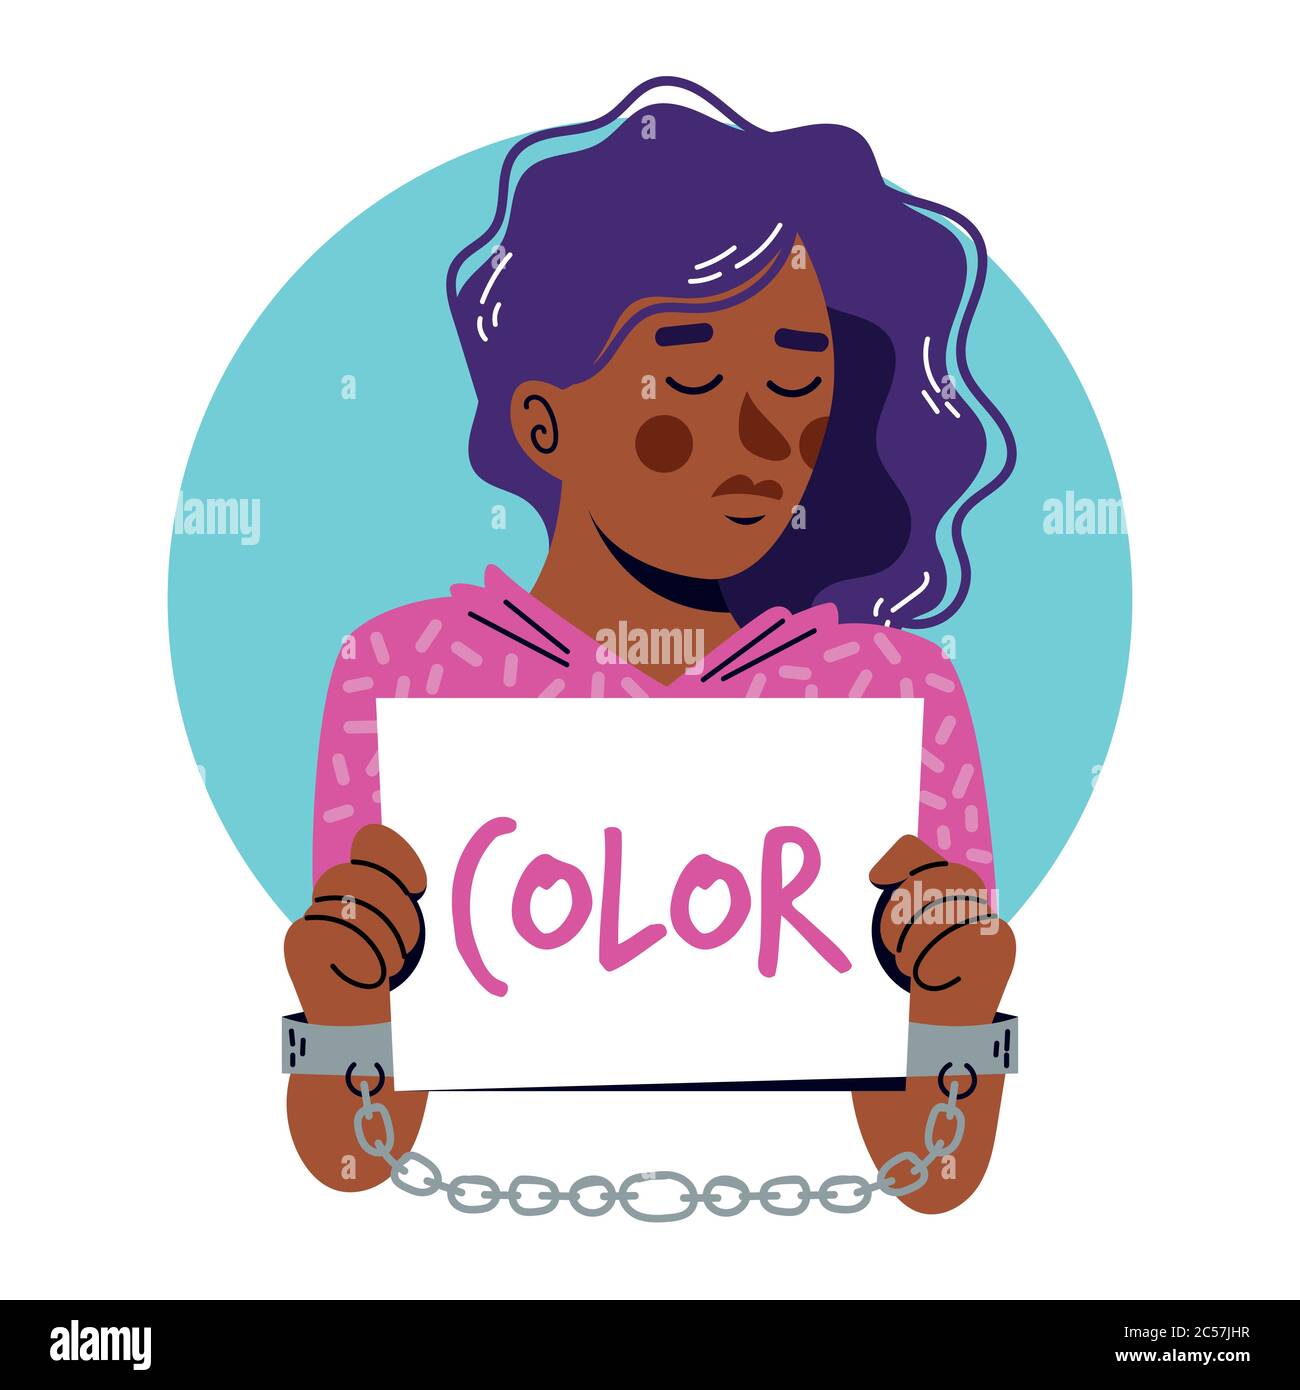 Disegni vettoriali piani raffiguranti mani di persone di diversi colori e persone di diverse razze insieme protestando contro la violenza razziale Illustrazione Vettoriale